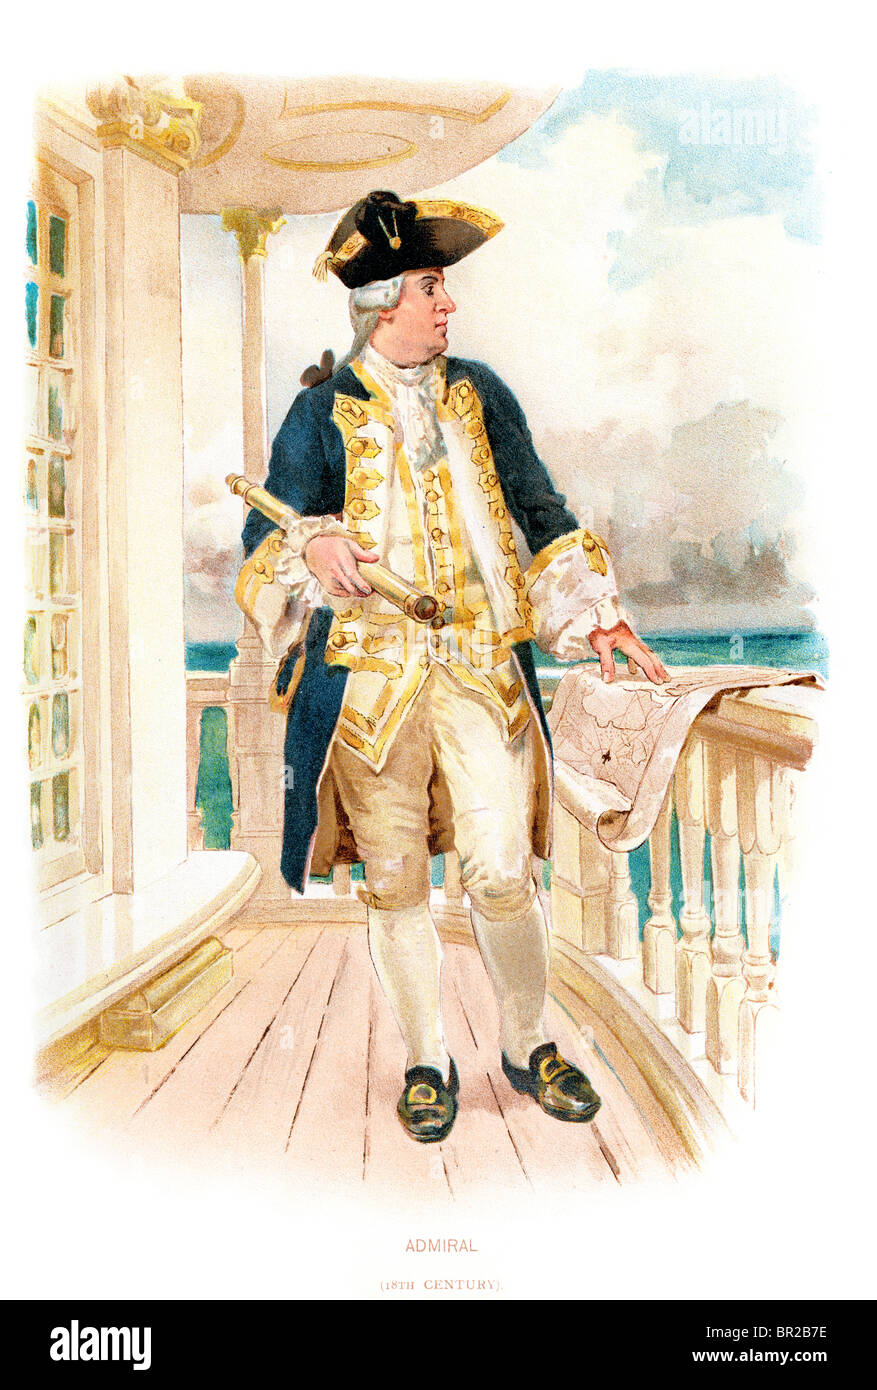 Un amiral de la Marine royale du 18ème siècle. Symons (99) Banque D'Images